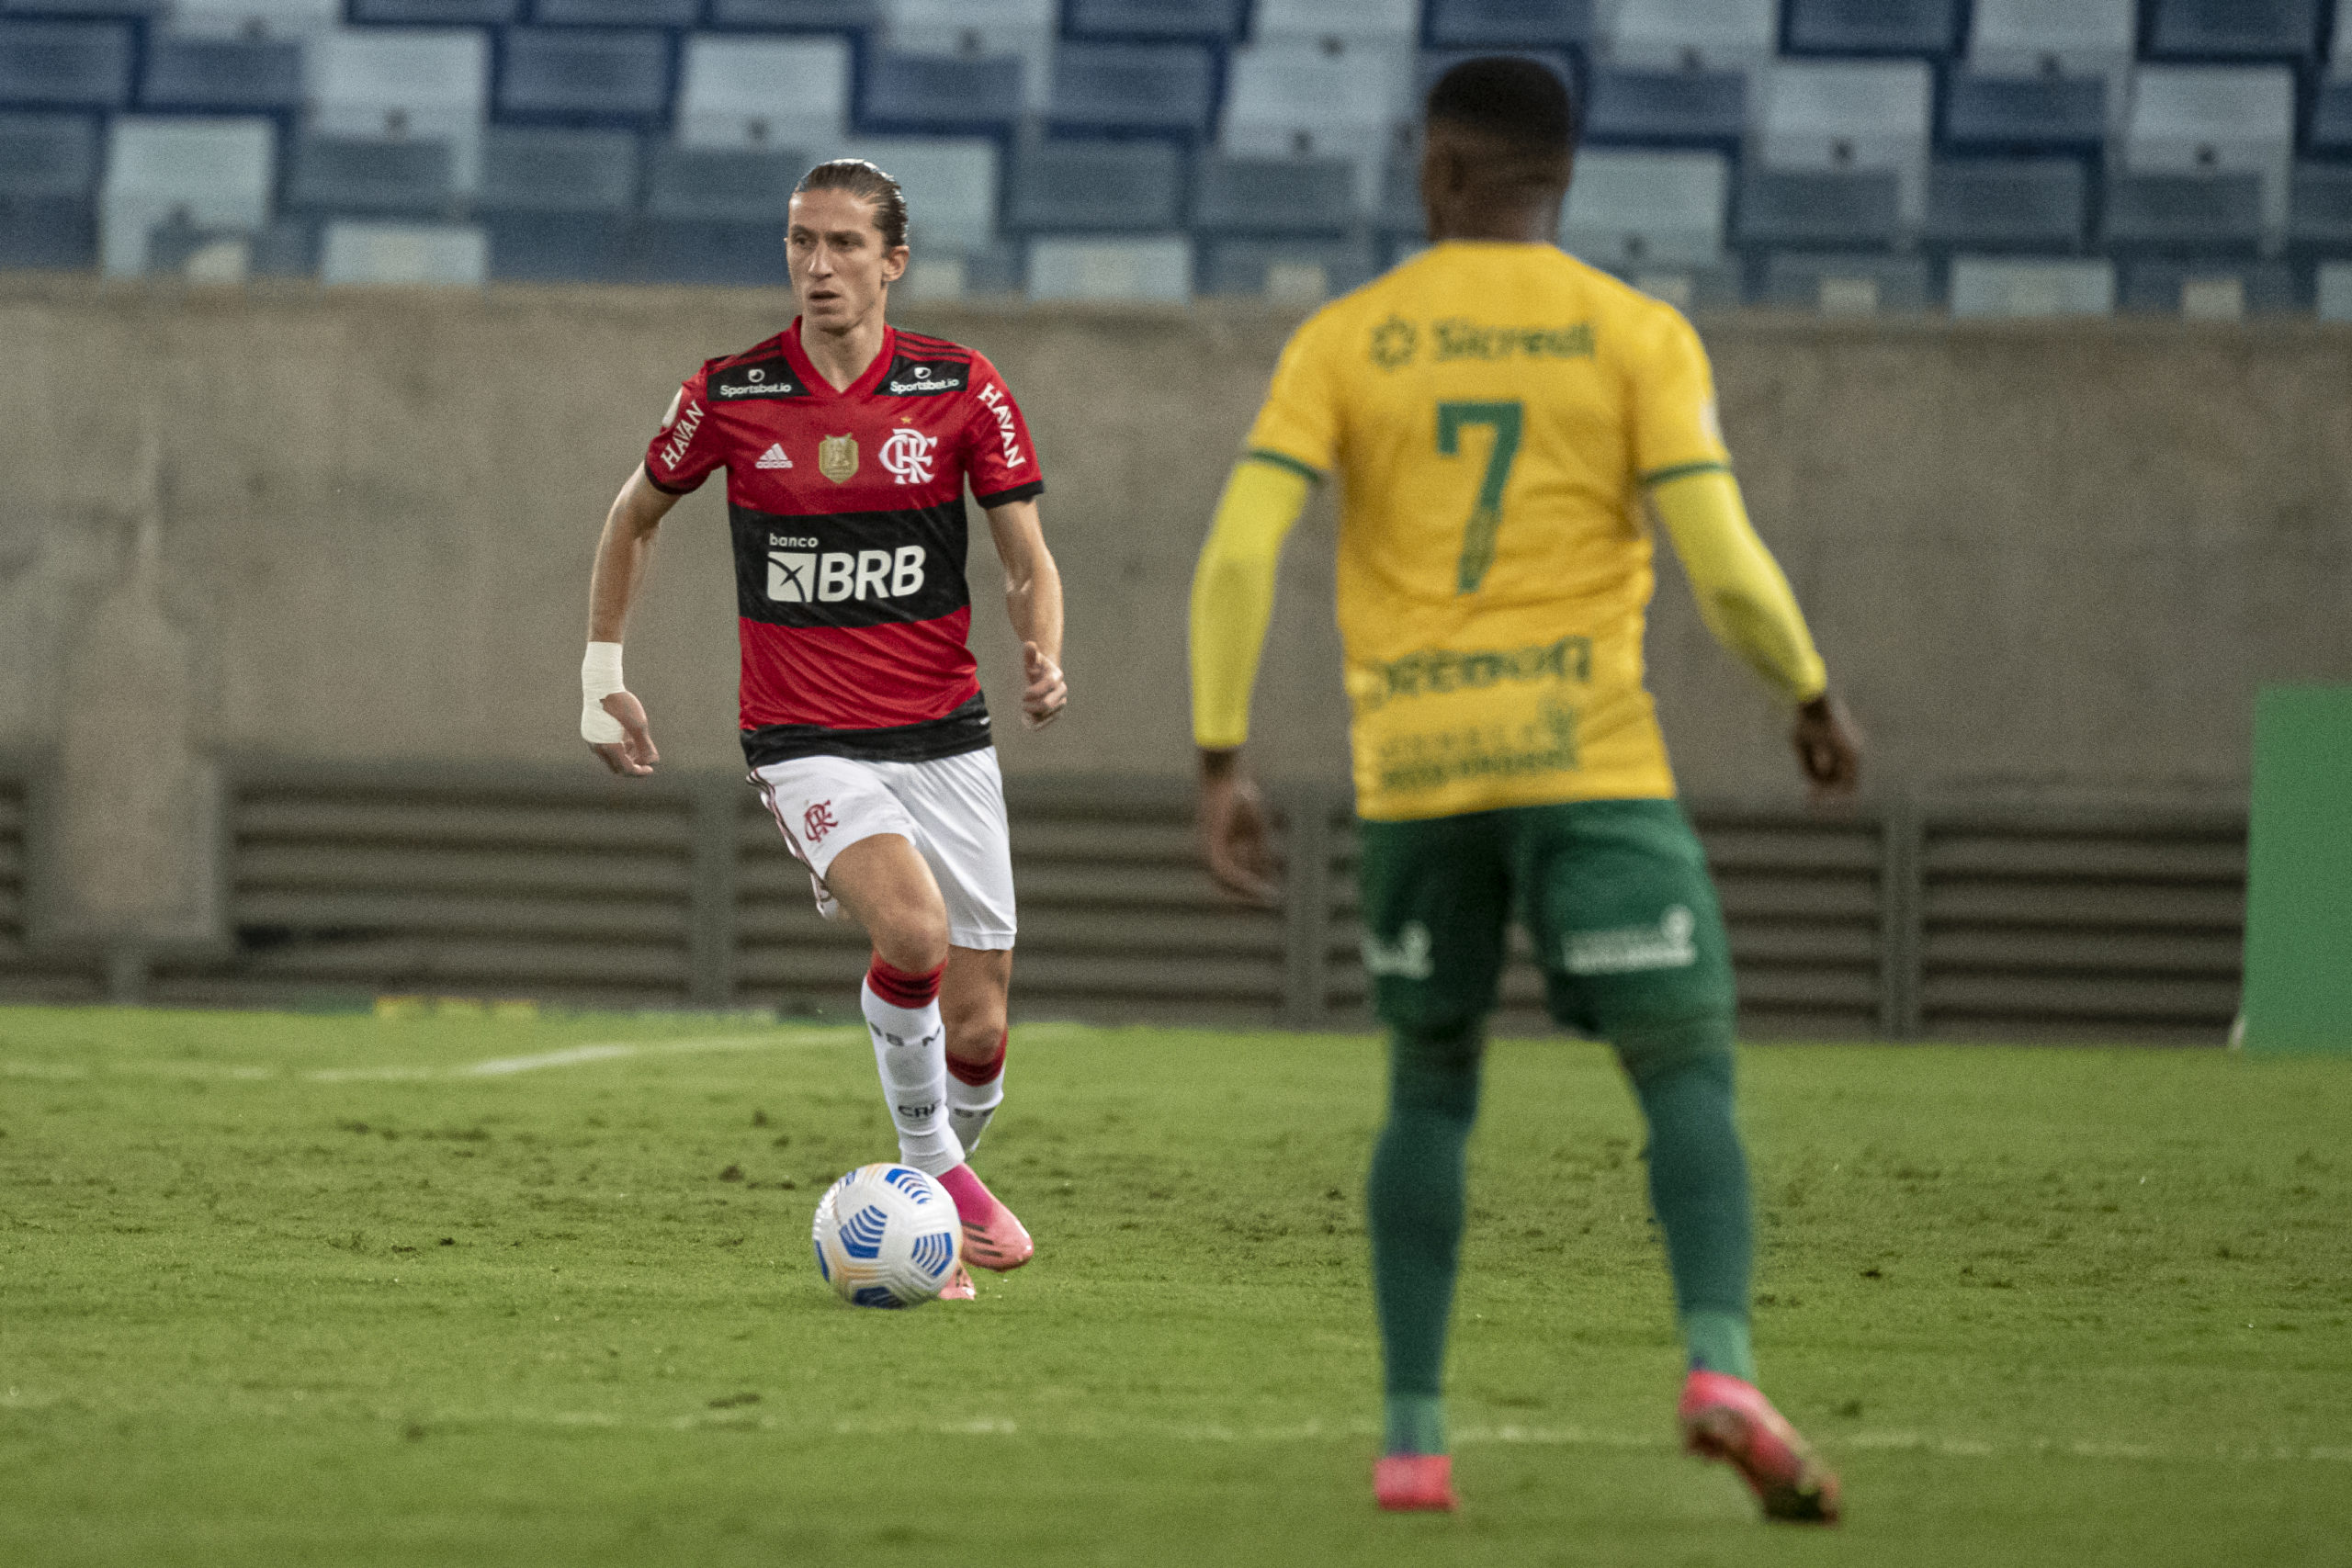 David Luís com a bola em jogo contra o Cuiabá (na frente da imagem, mas desfocado também aparece um jogador do Cuiabá)